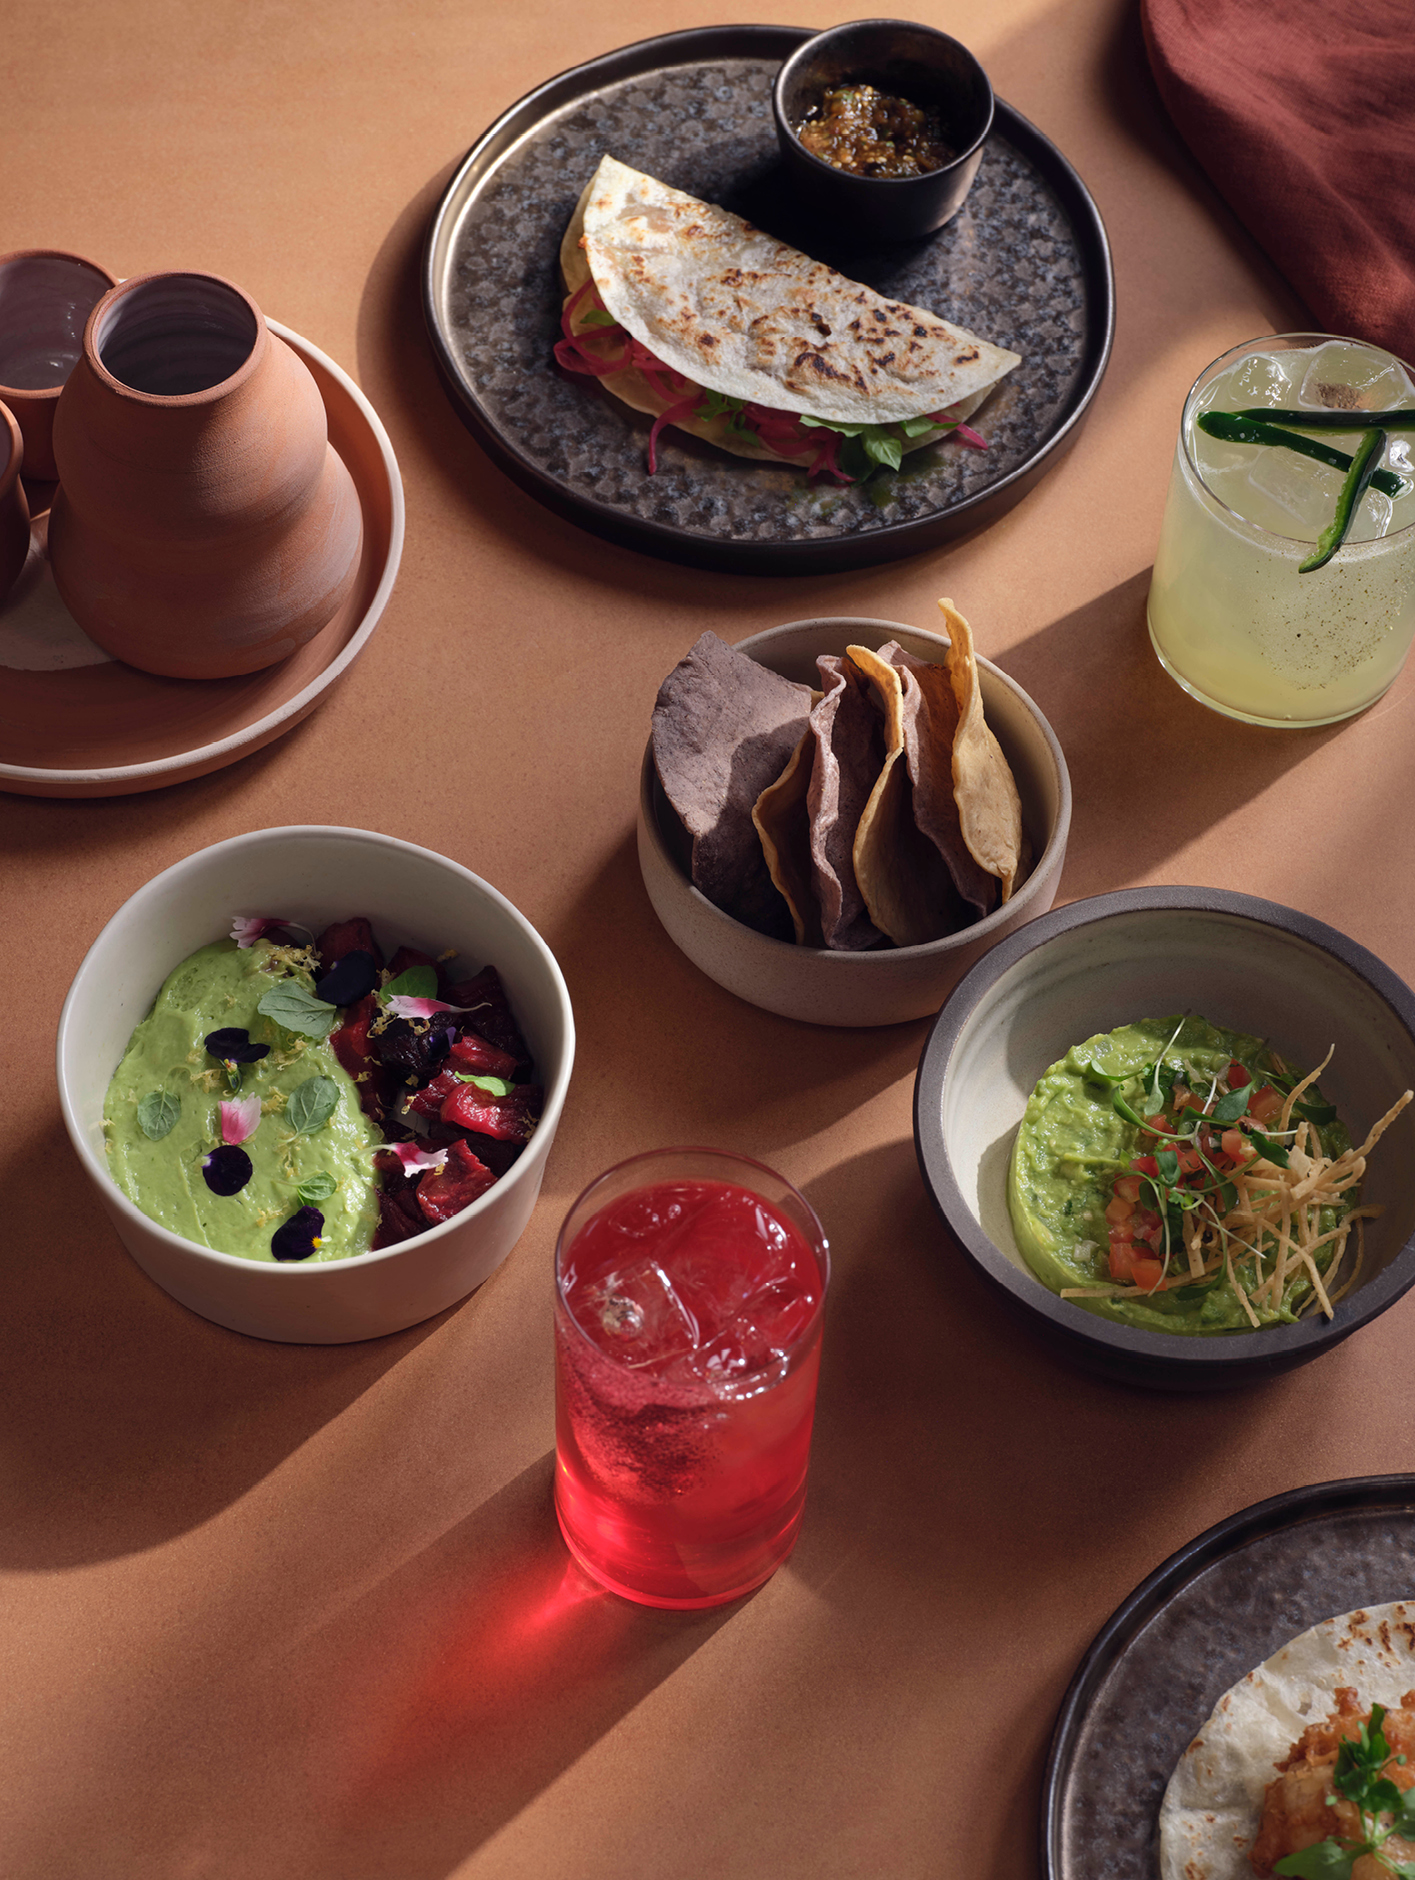 Ixchel's menu is a celebration of authentic Mexican cuisine